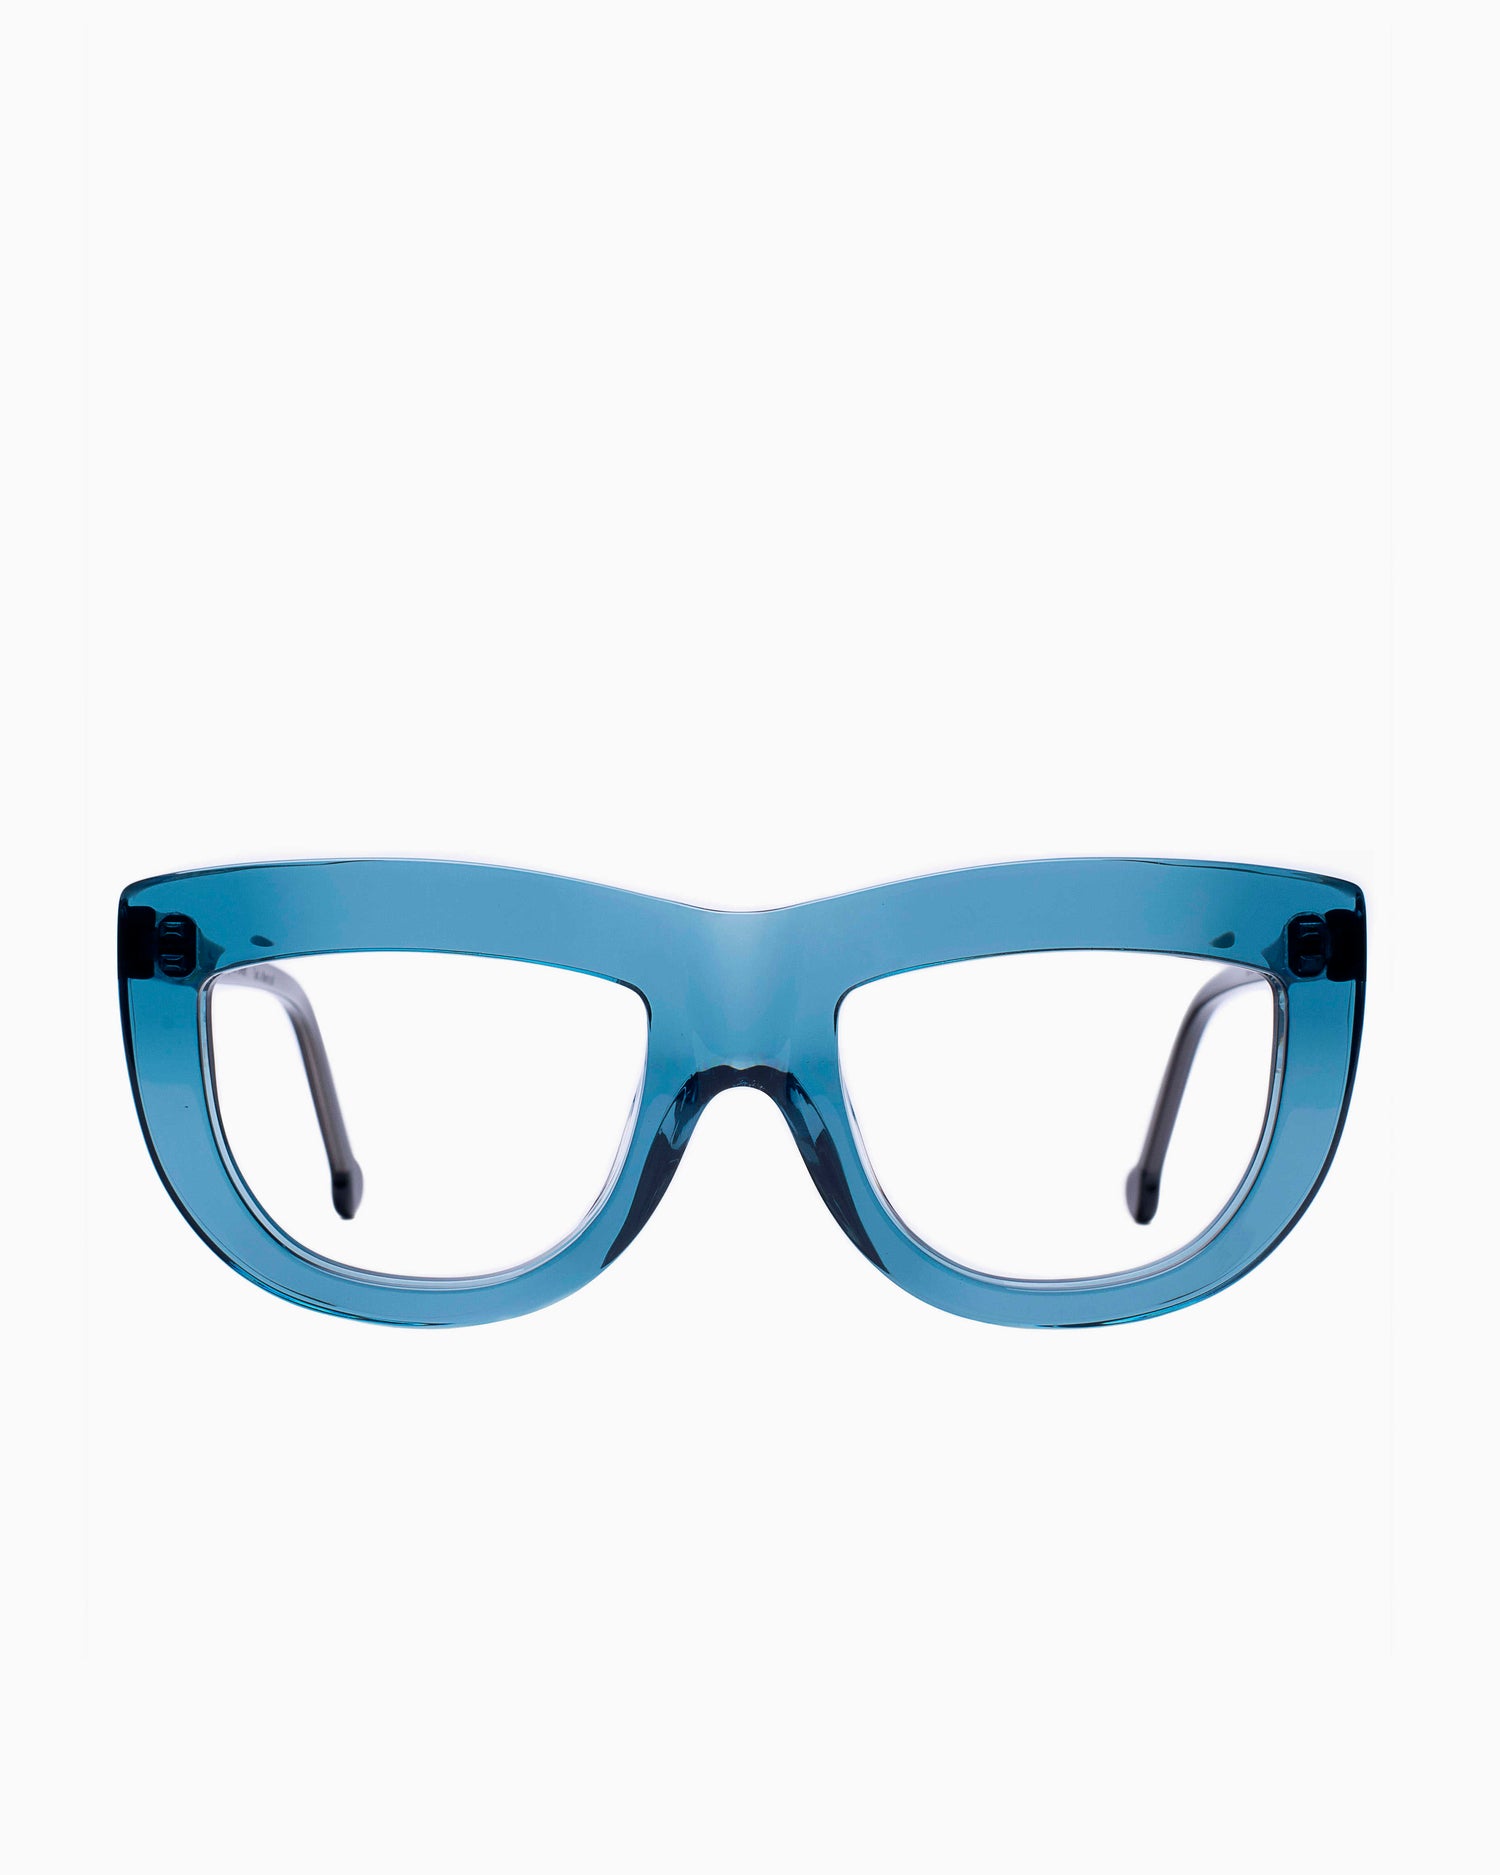 Marie-Sophie Dion - Germain - Blu | glasses bar:  Marie-Sophie Dion